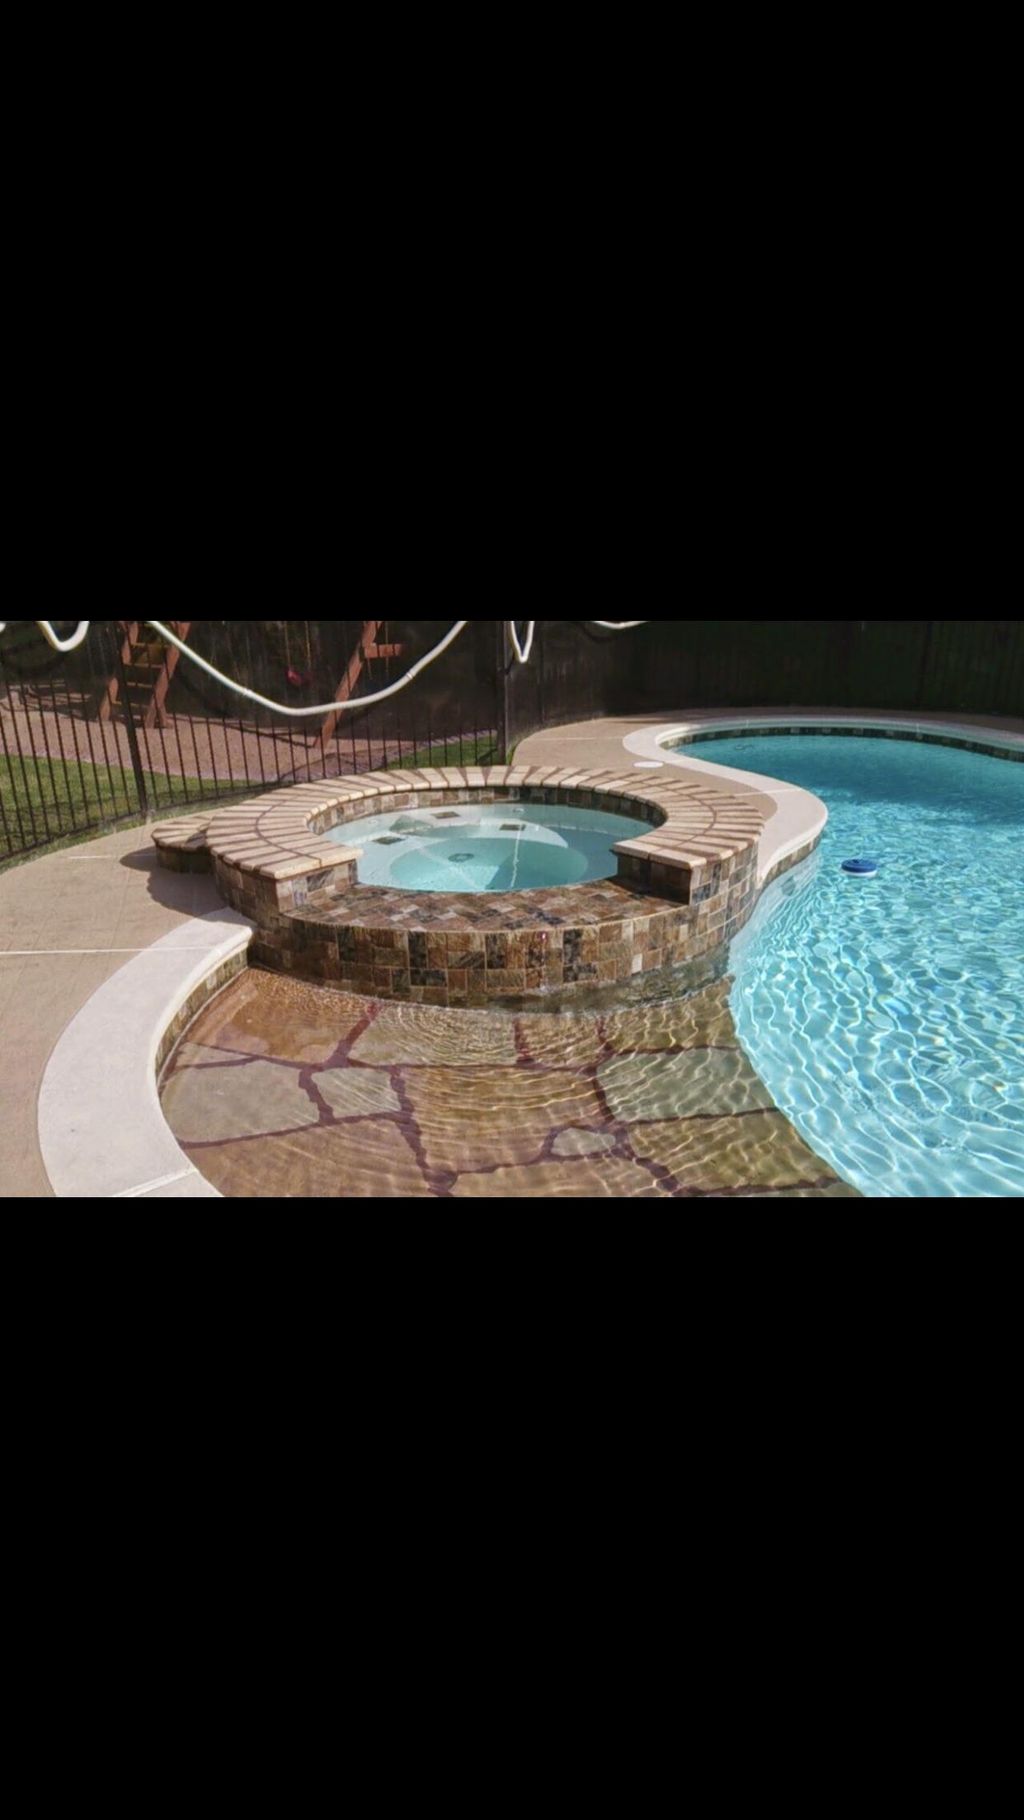 Luxury pools and spas